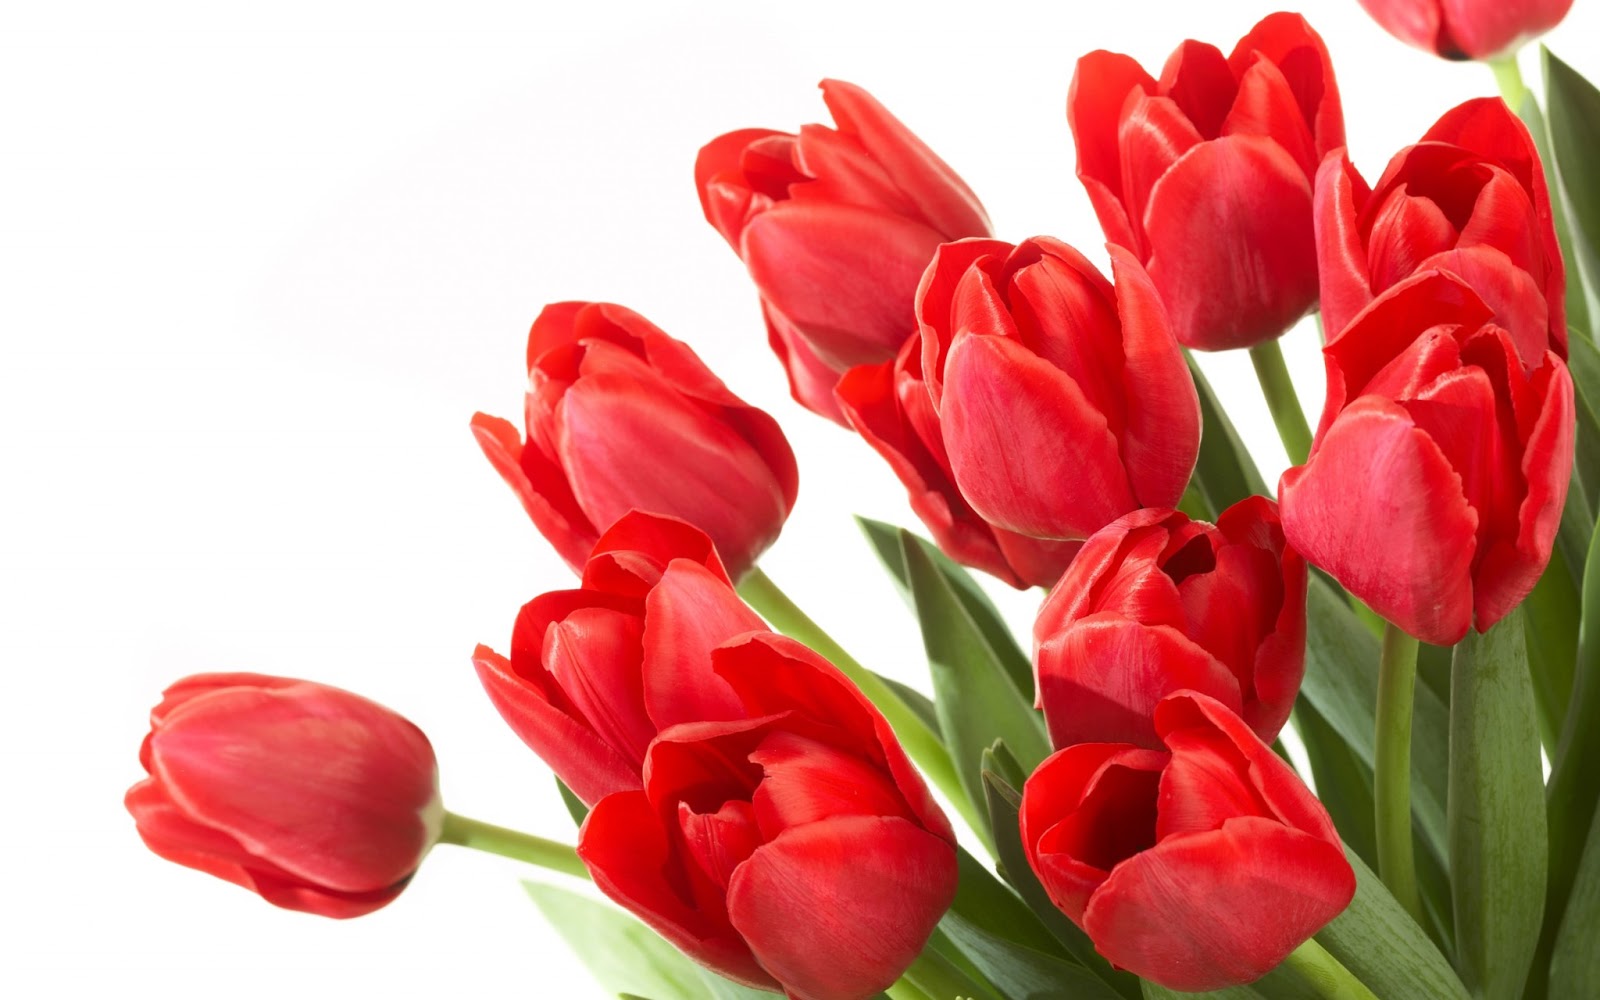 Chọn một bó hoa tulip đỏ tặng bạn gái mới quen trong ngày sinh nhật nàng để thay cho lời tỏ tình